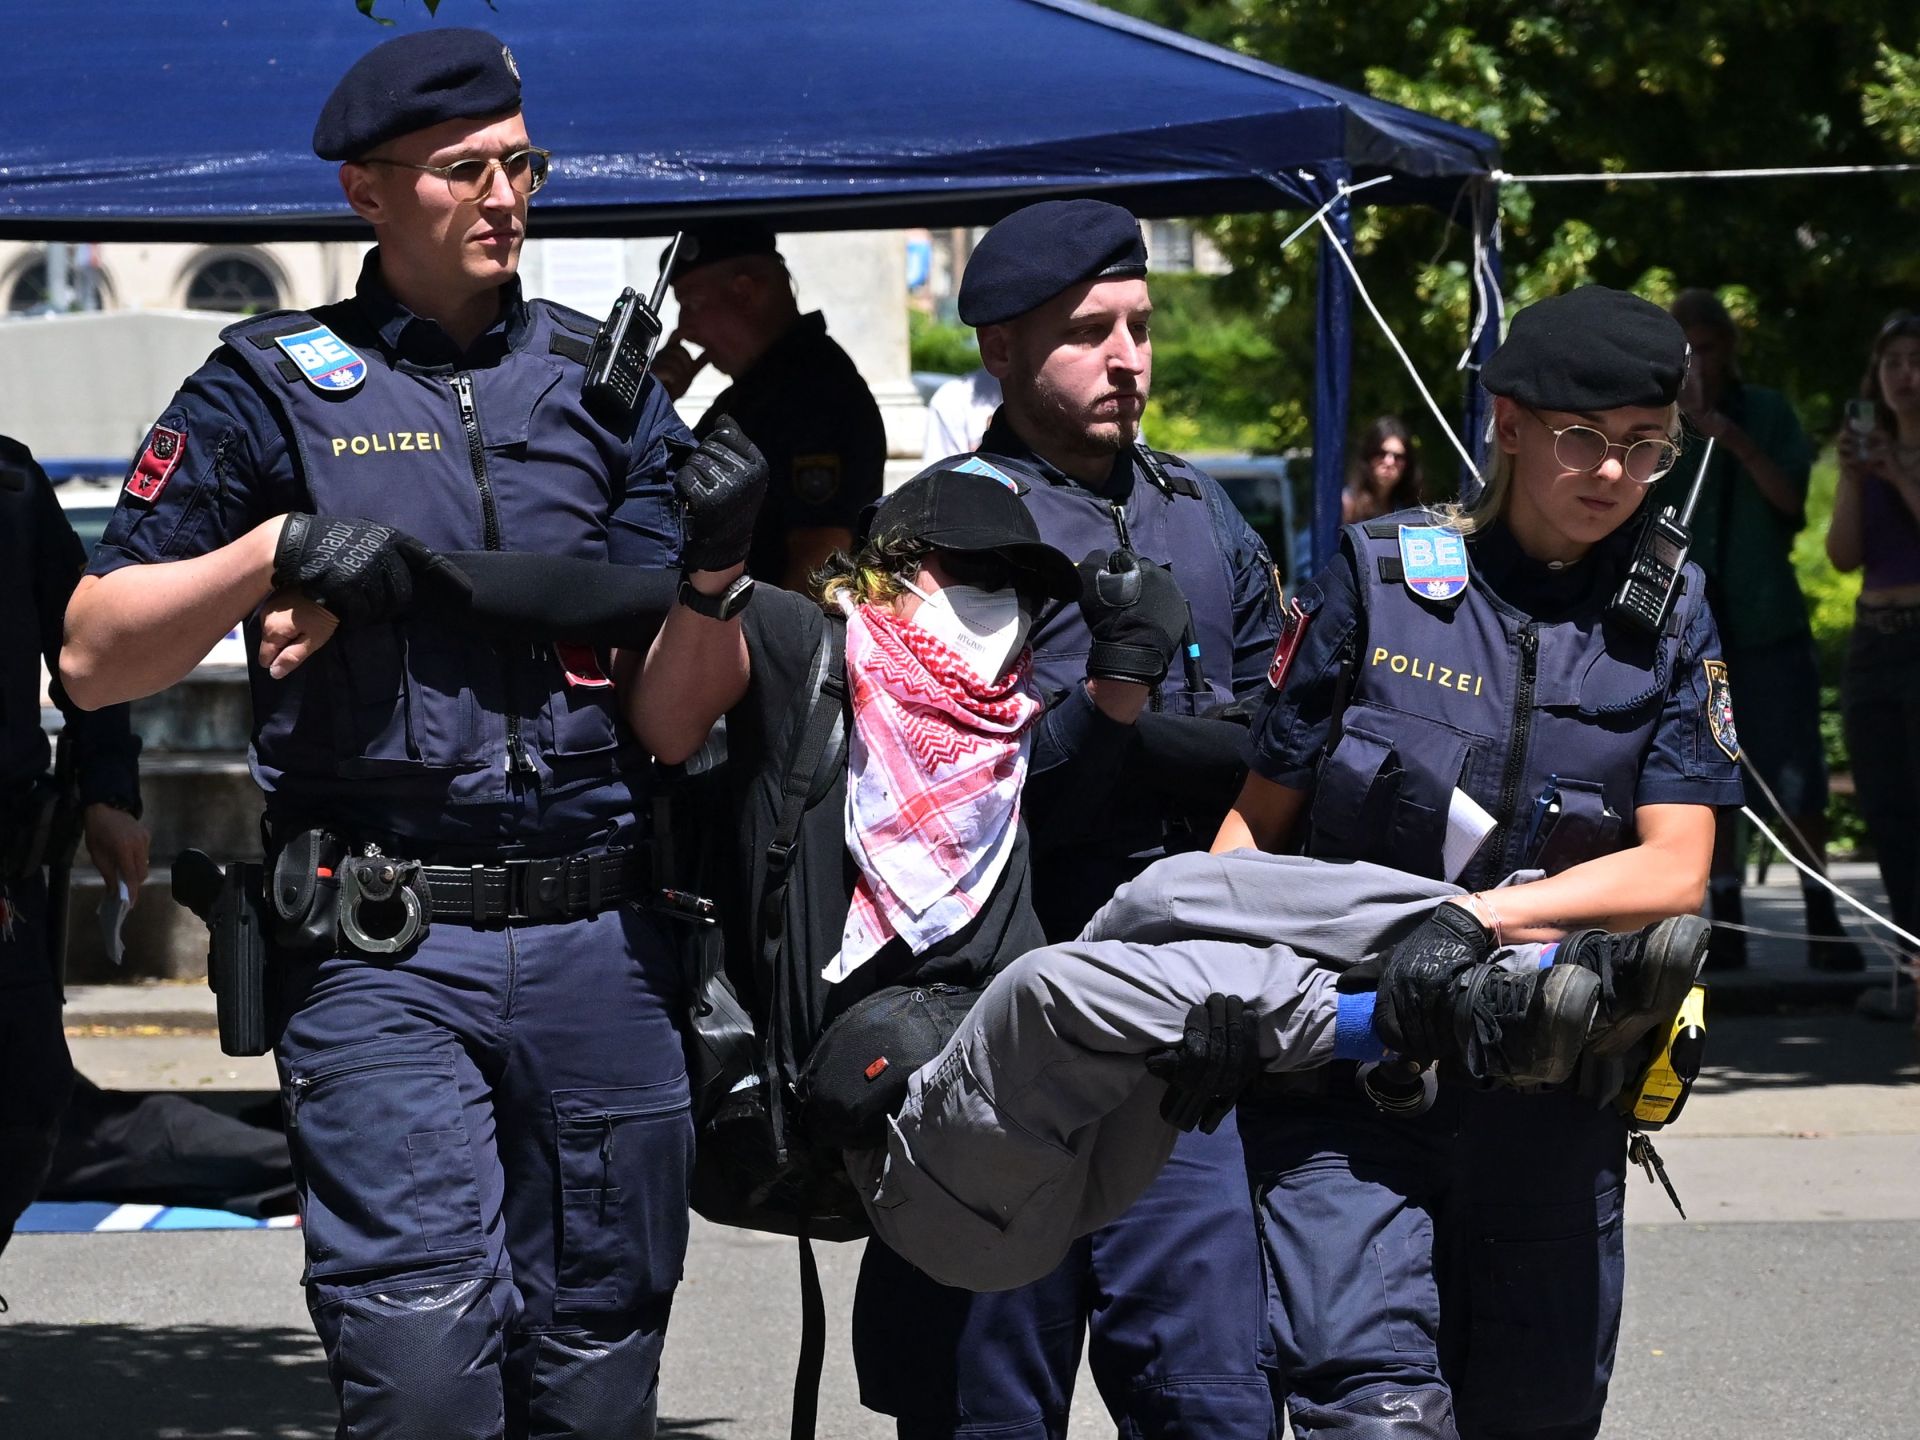 اعتقال مناصرين لغزة بجامعة فيينا وتفريق مظاهرة في بروكسل | أخبار – البوكس نيوز